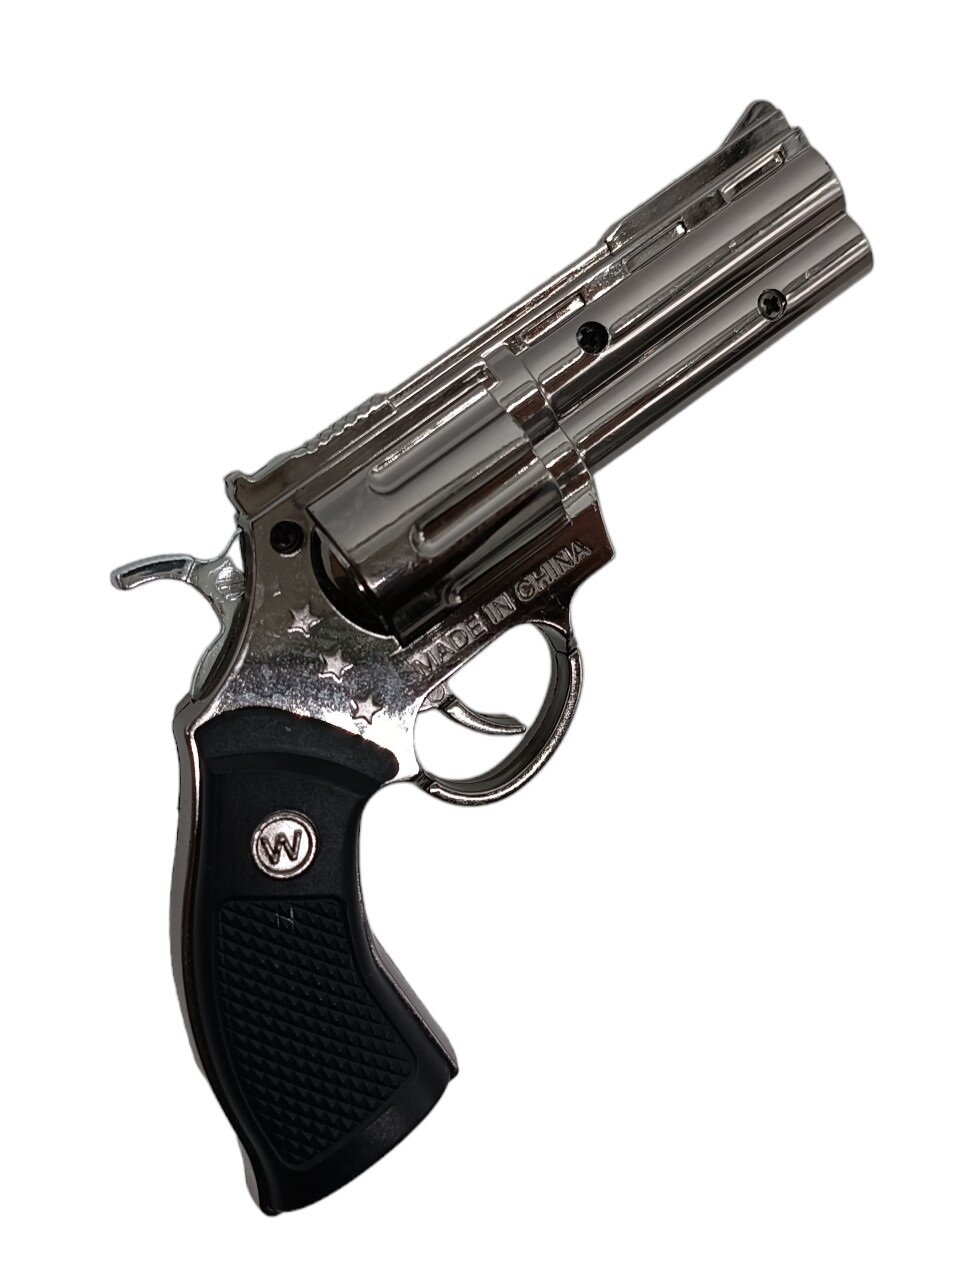 Зажигалка газовая револьвер Colt Python цвет медь